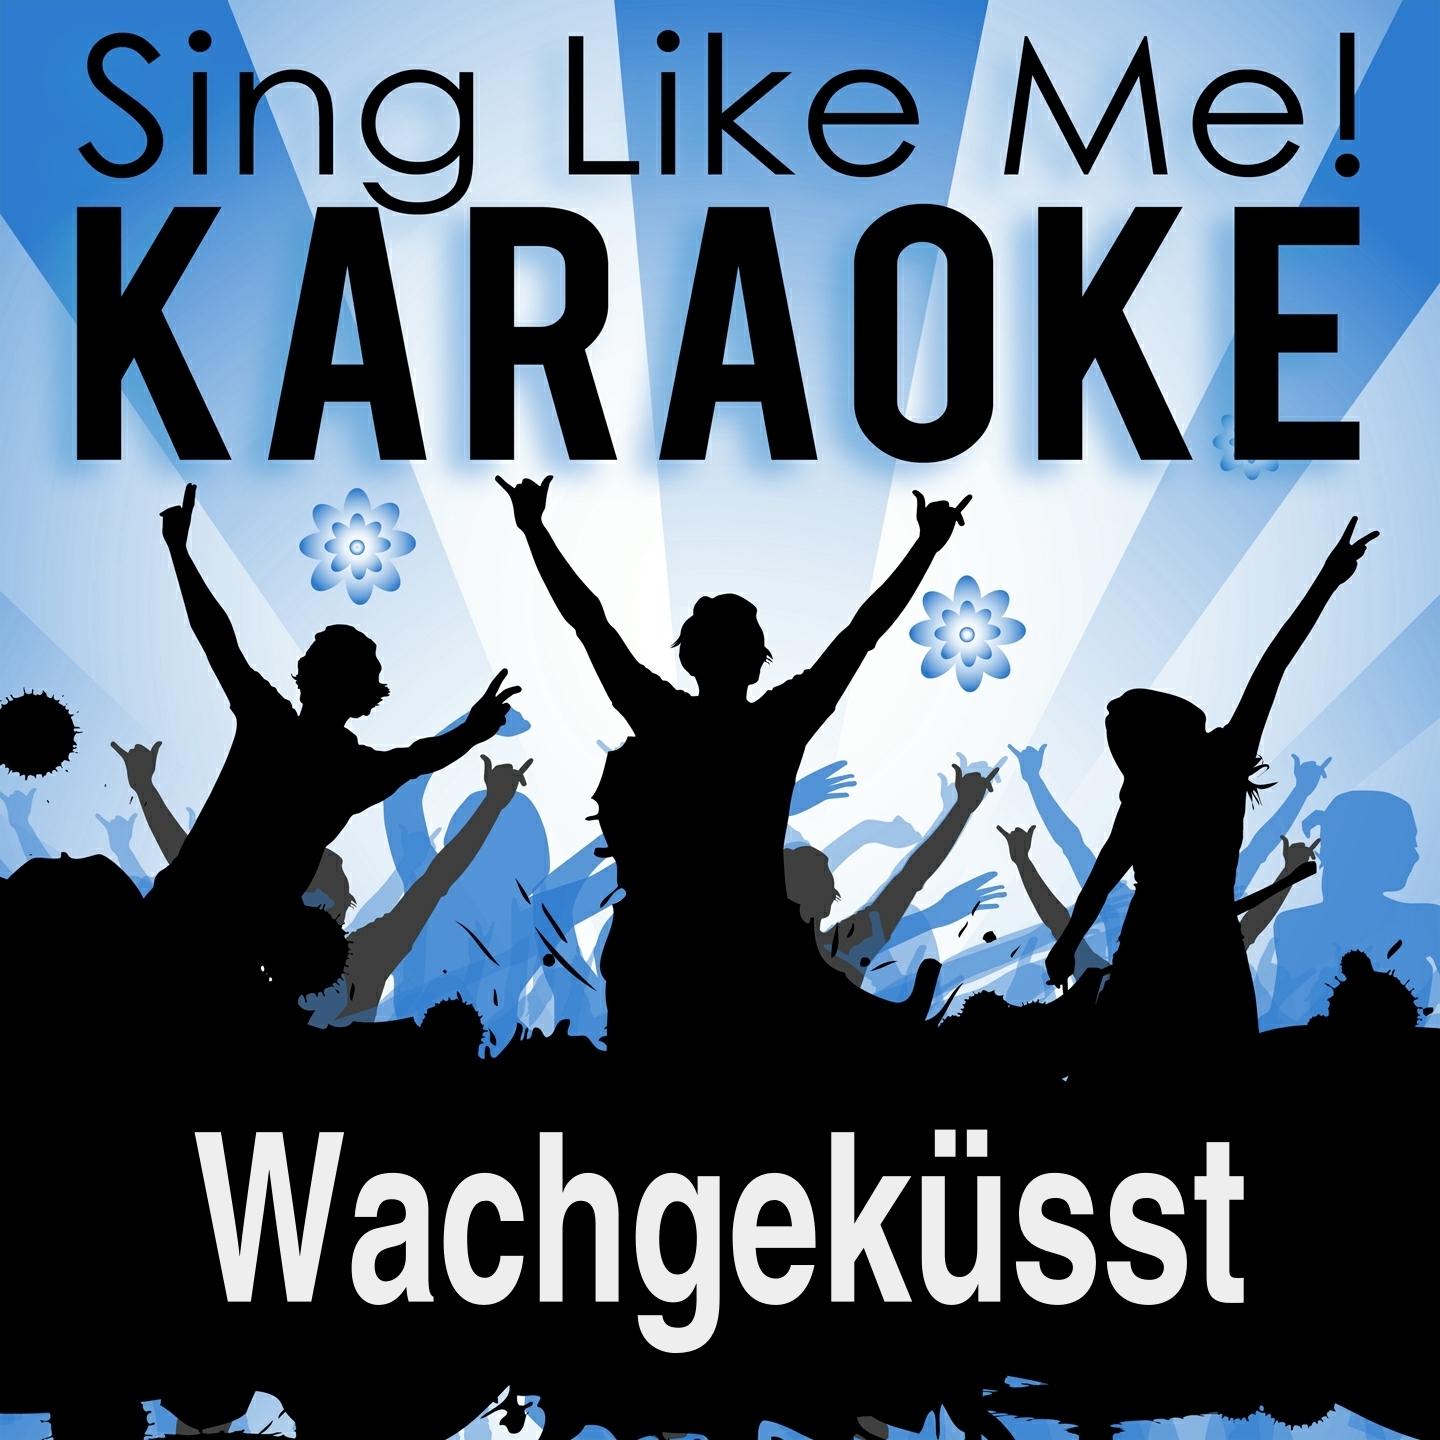 Wachgekü sst Karaoke Version